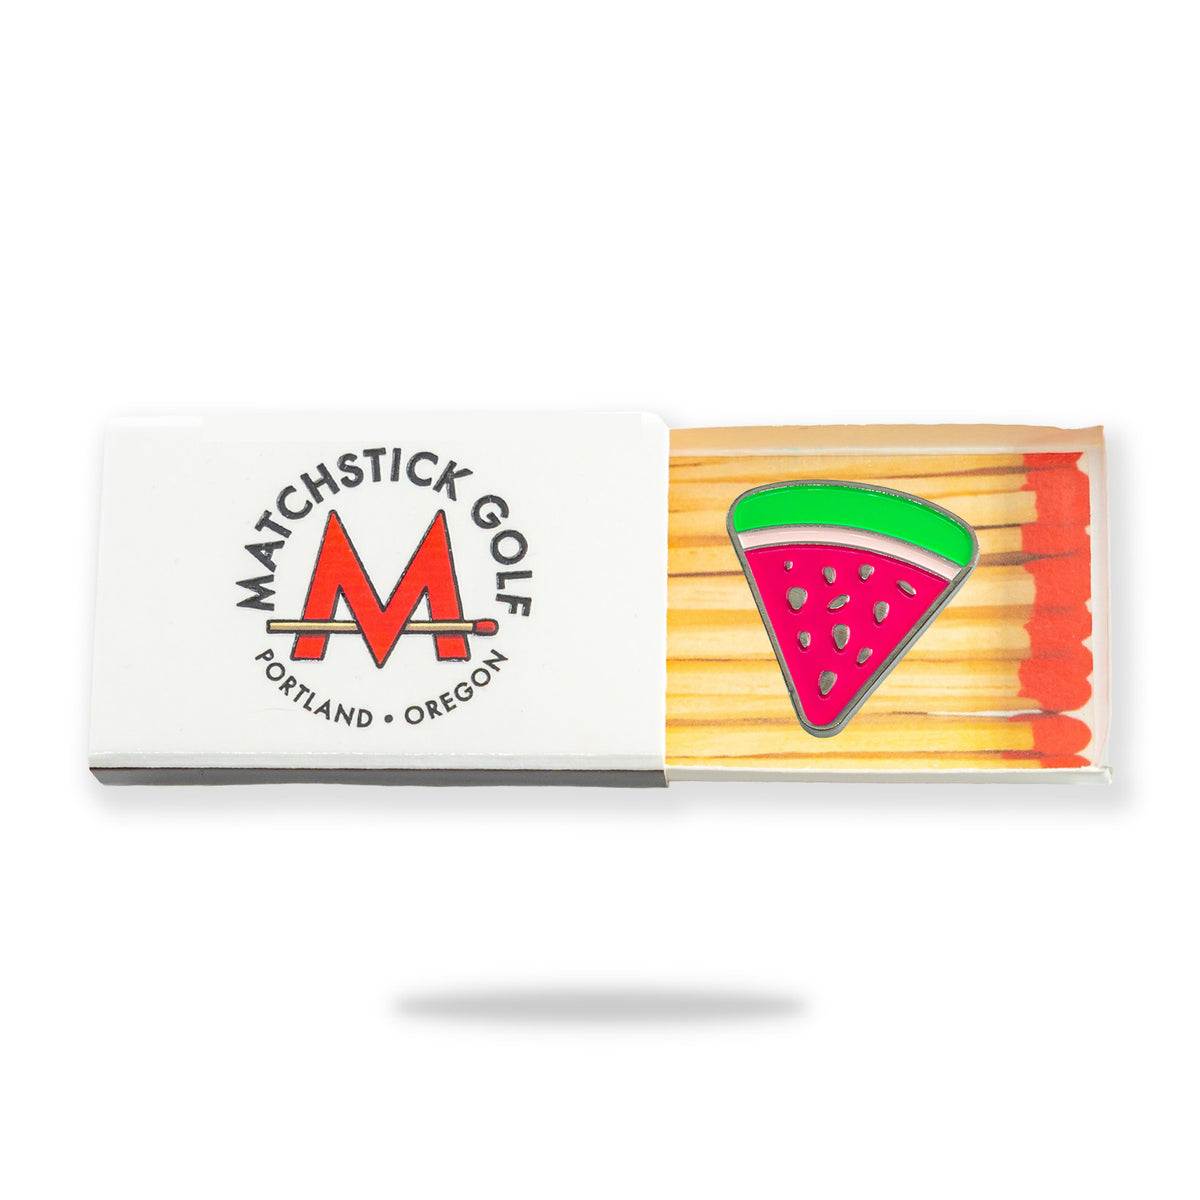 watermelon slice golf ball marker matchstick matchbox packaging